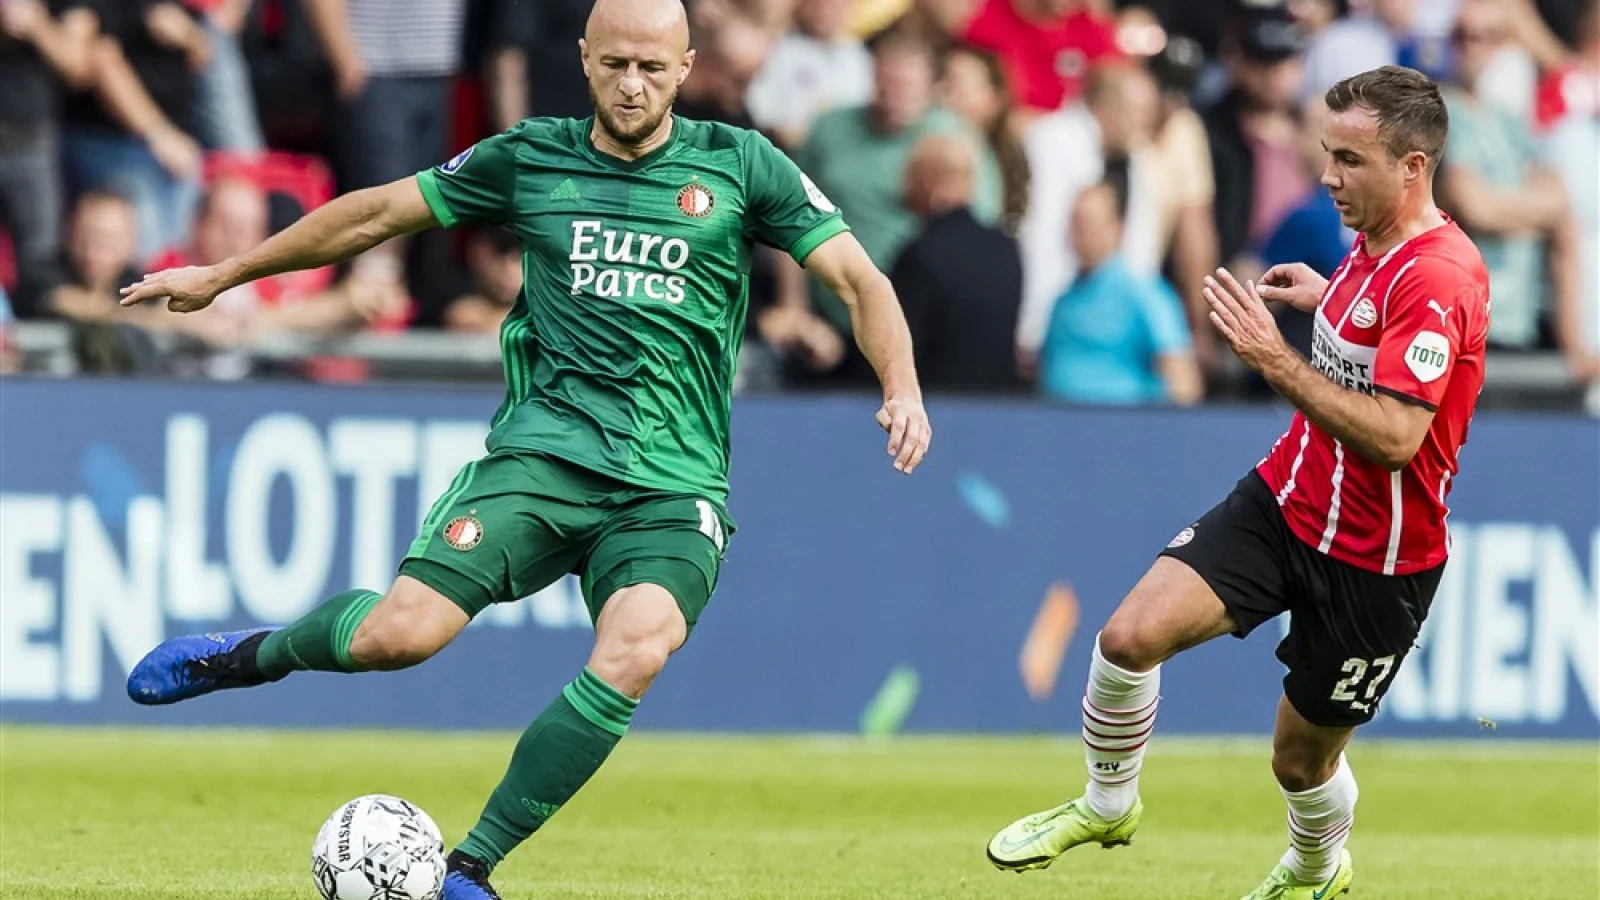 LIVE | PSV - Feyenoord 0-4 | Einde wedstrijd